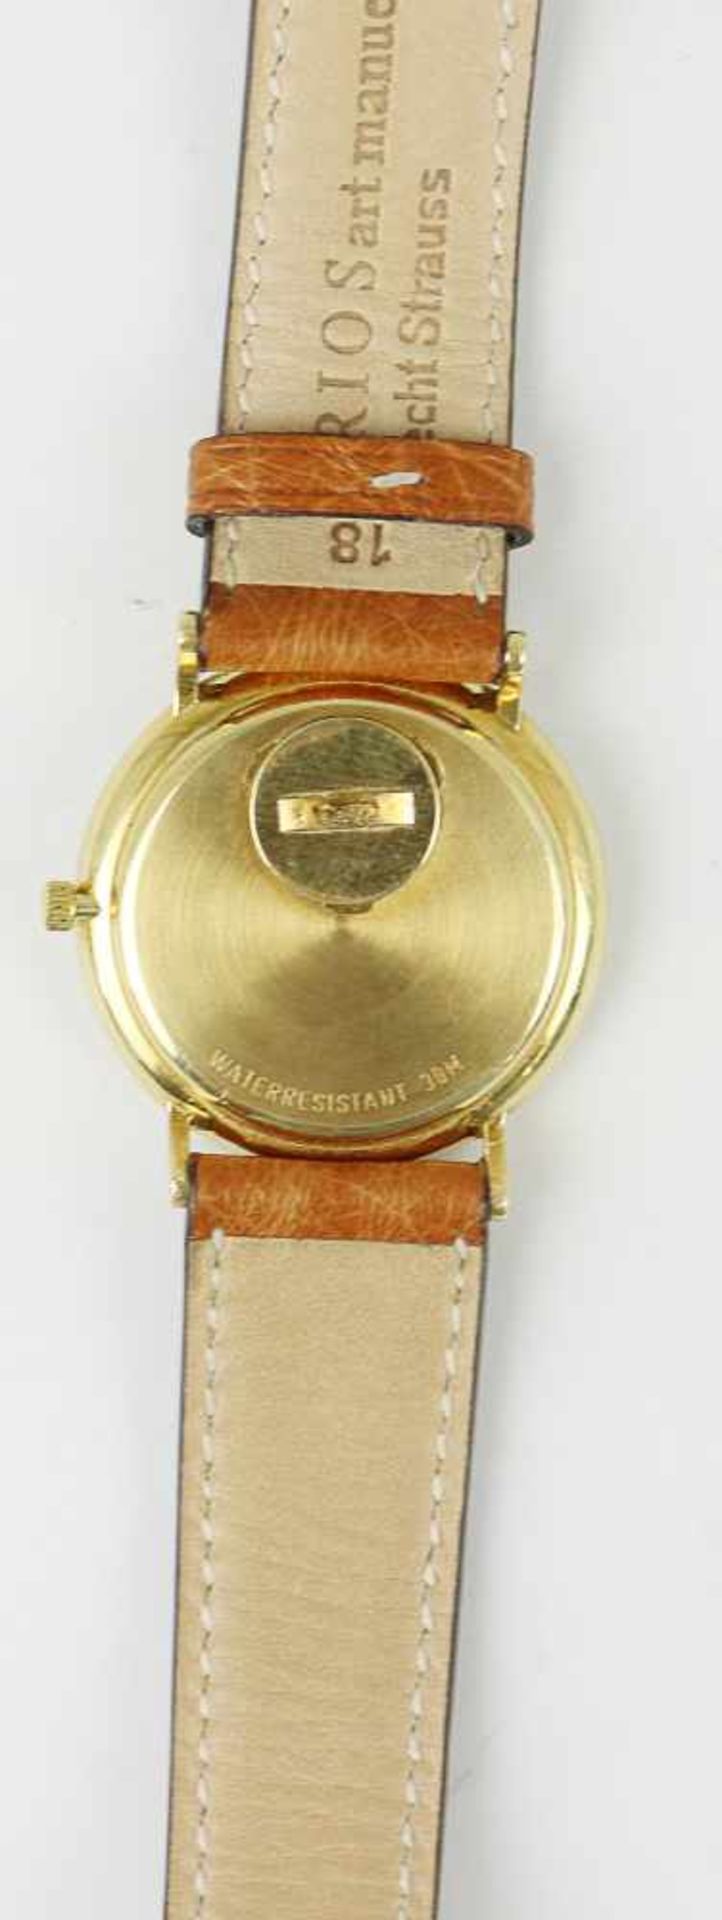 Herrenarmbanduhr - TissotSchweiz, GG 750, rundes Gehäuse, Dca.3,2cm, goldfarbenes Zifferblatt, - Bild 4 aus 5